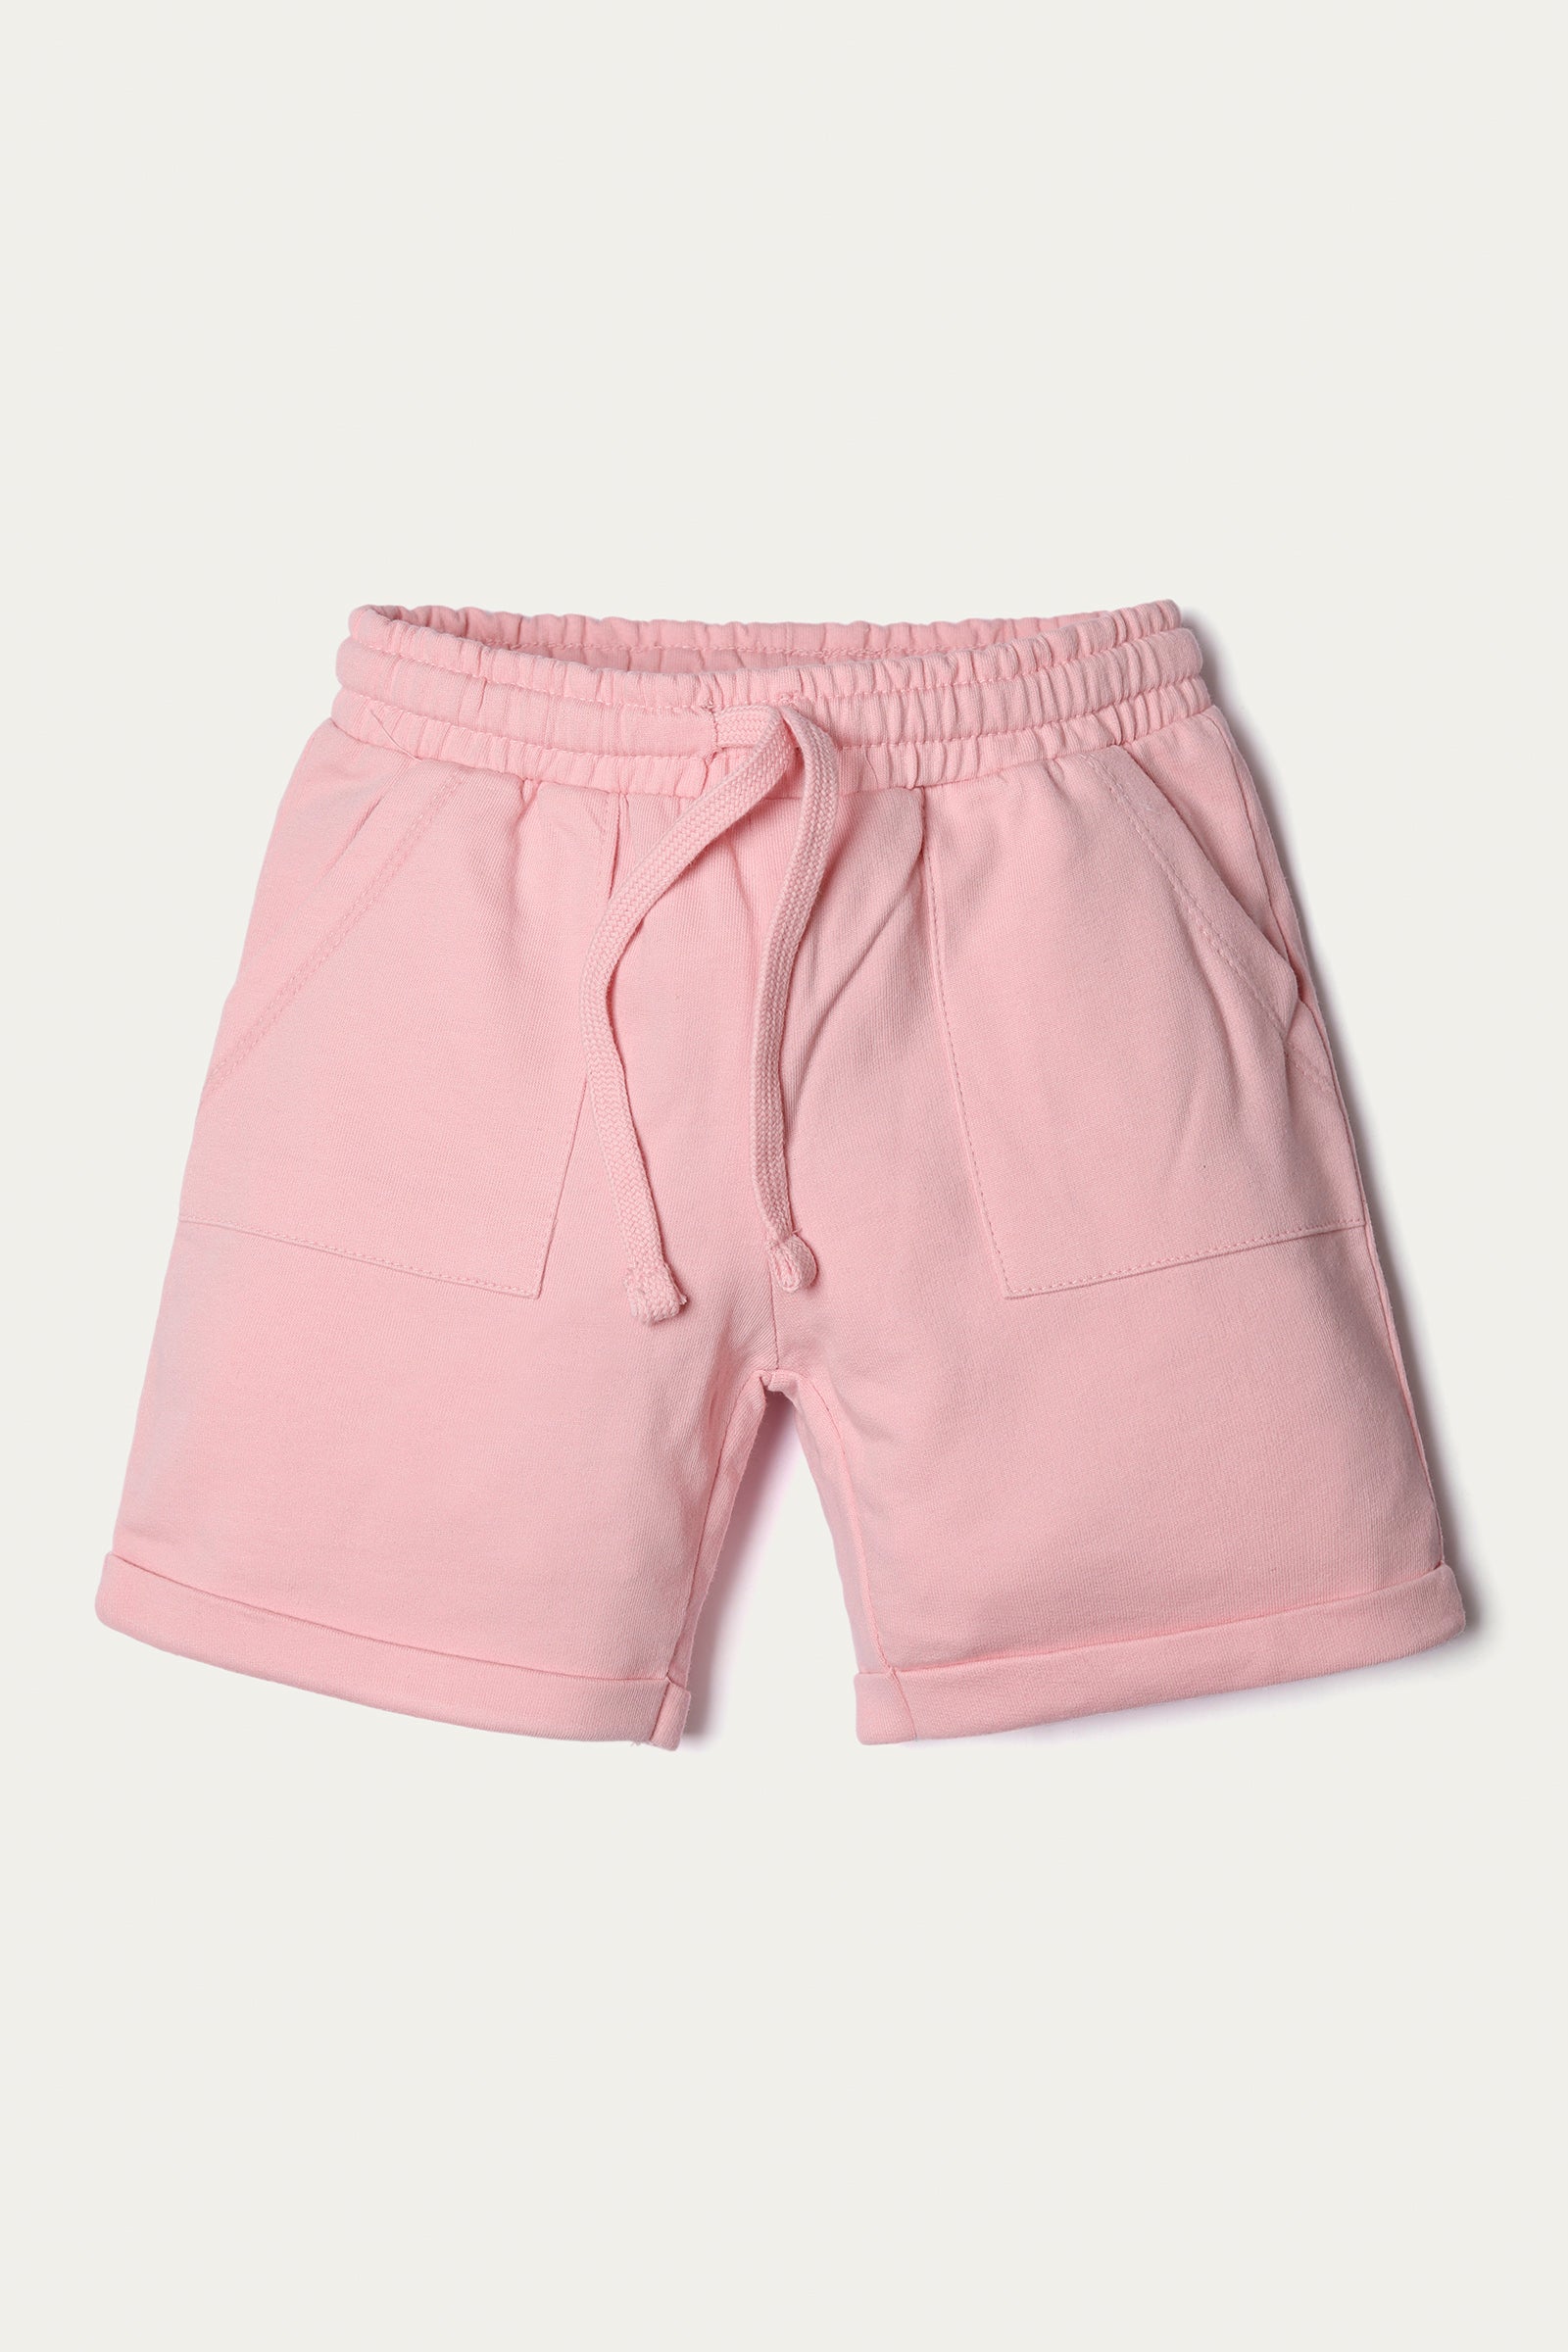 Shorts (GBKS-016)